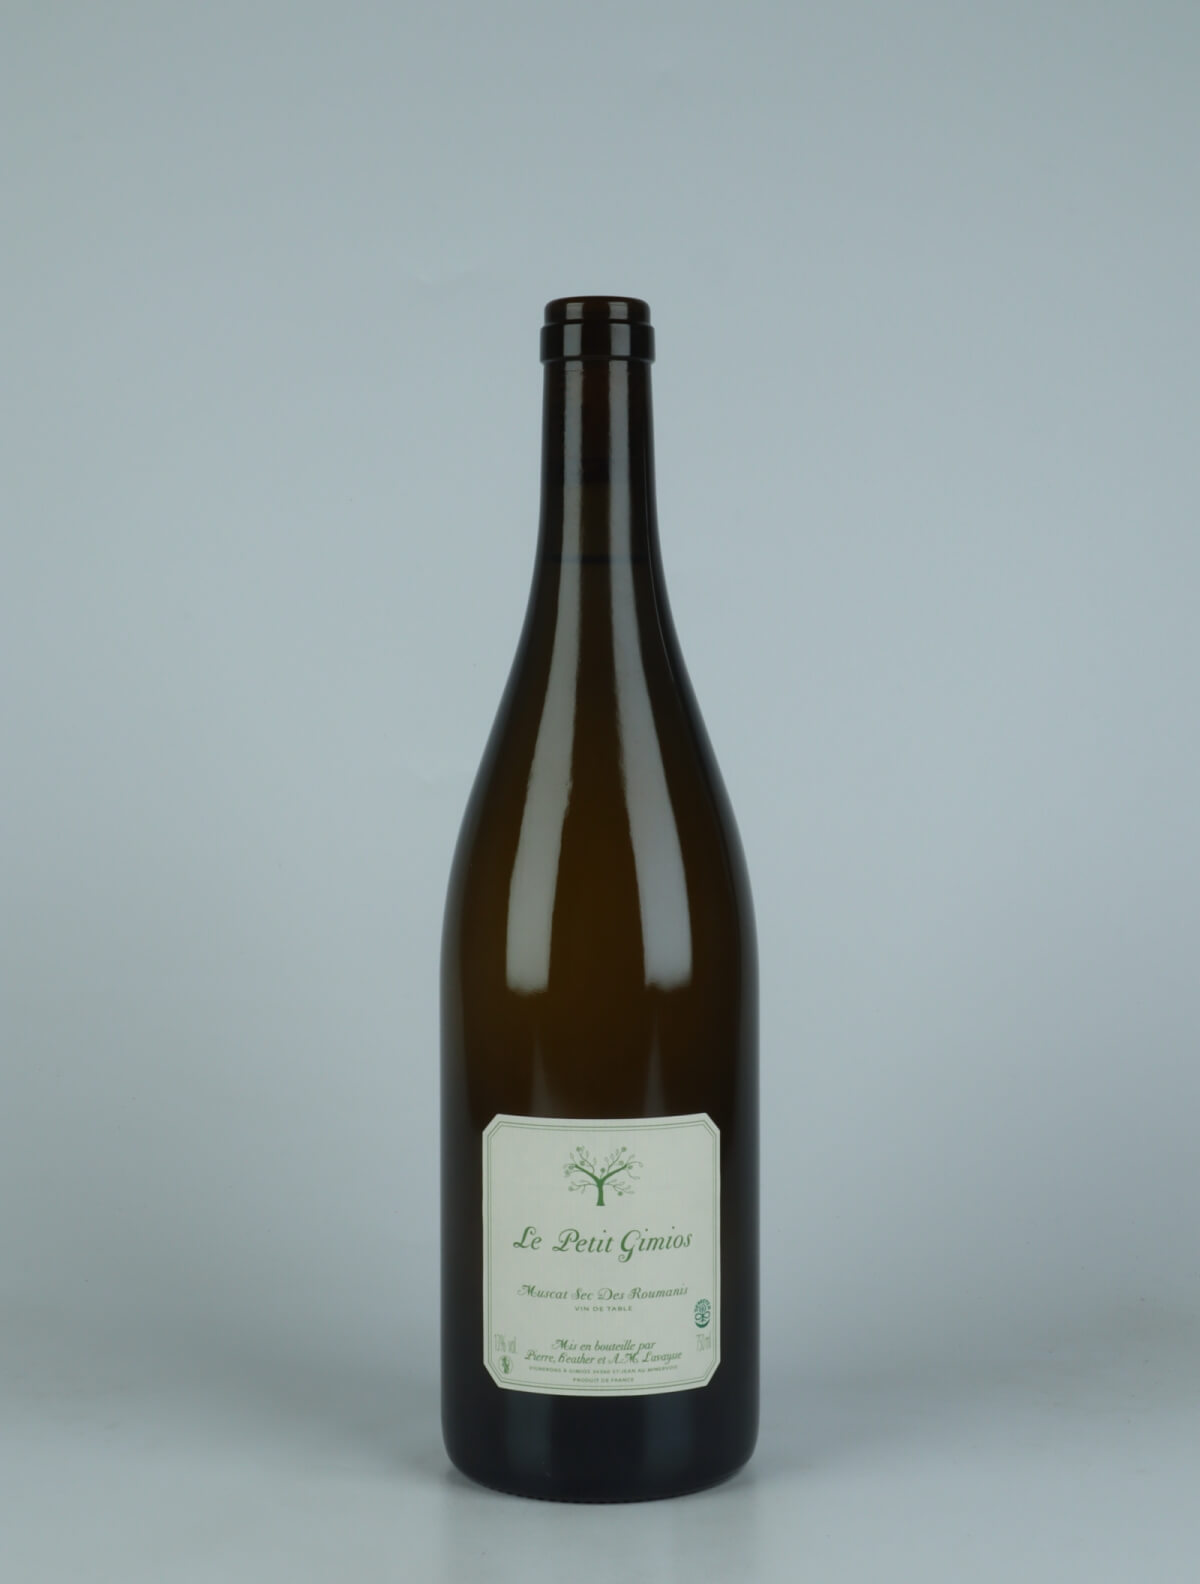 A bottle 2022 Muscat sec White wine from Le Petit Domaine de Gimios, Rousillon in France